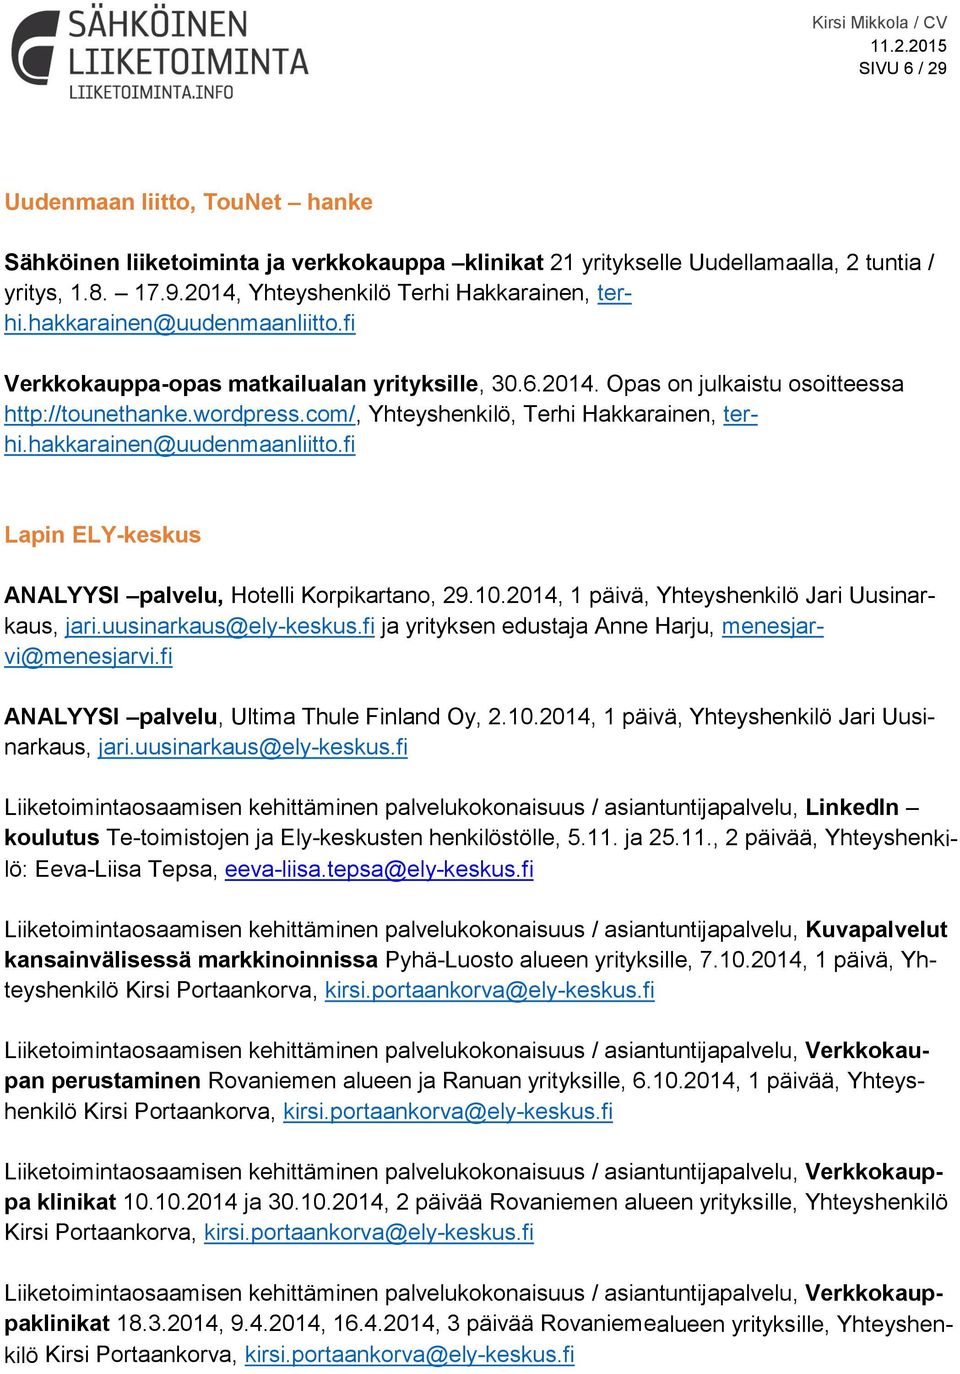 hakkarainen@uudenmaanliitto.fi Lapin ELY-keskus ANALYYSI palvelu, Hotelli Korpikartano, 29.10.2014, 1 päivä, Yhteyshenkilö Jari Uusinarkaus, jari.uusinarkaus@ely-keskus.